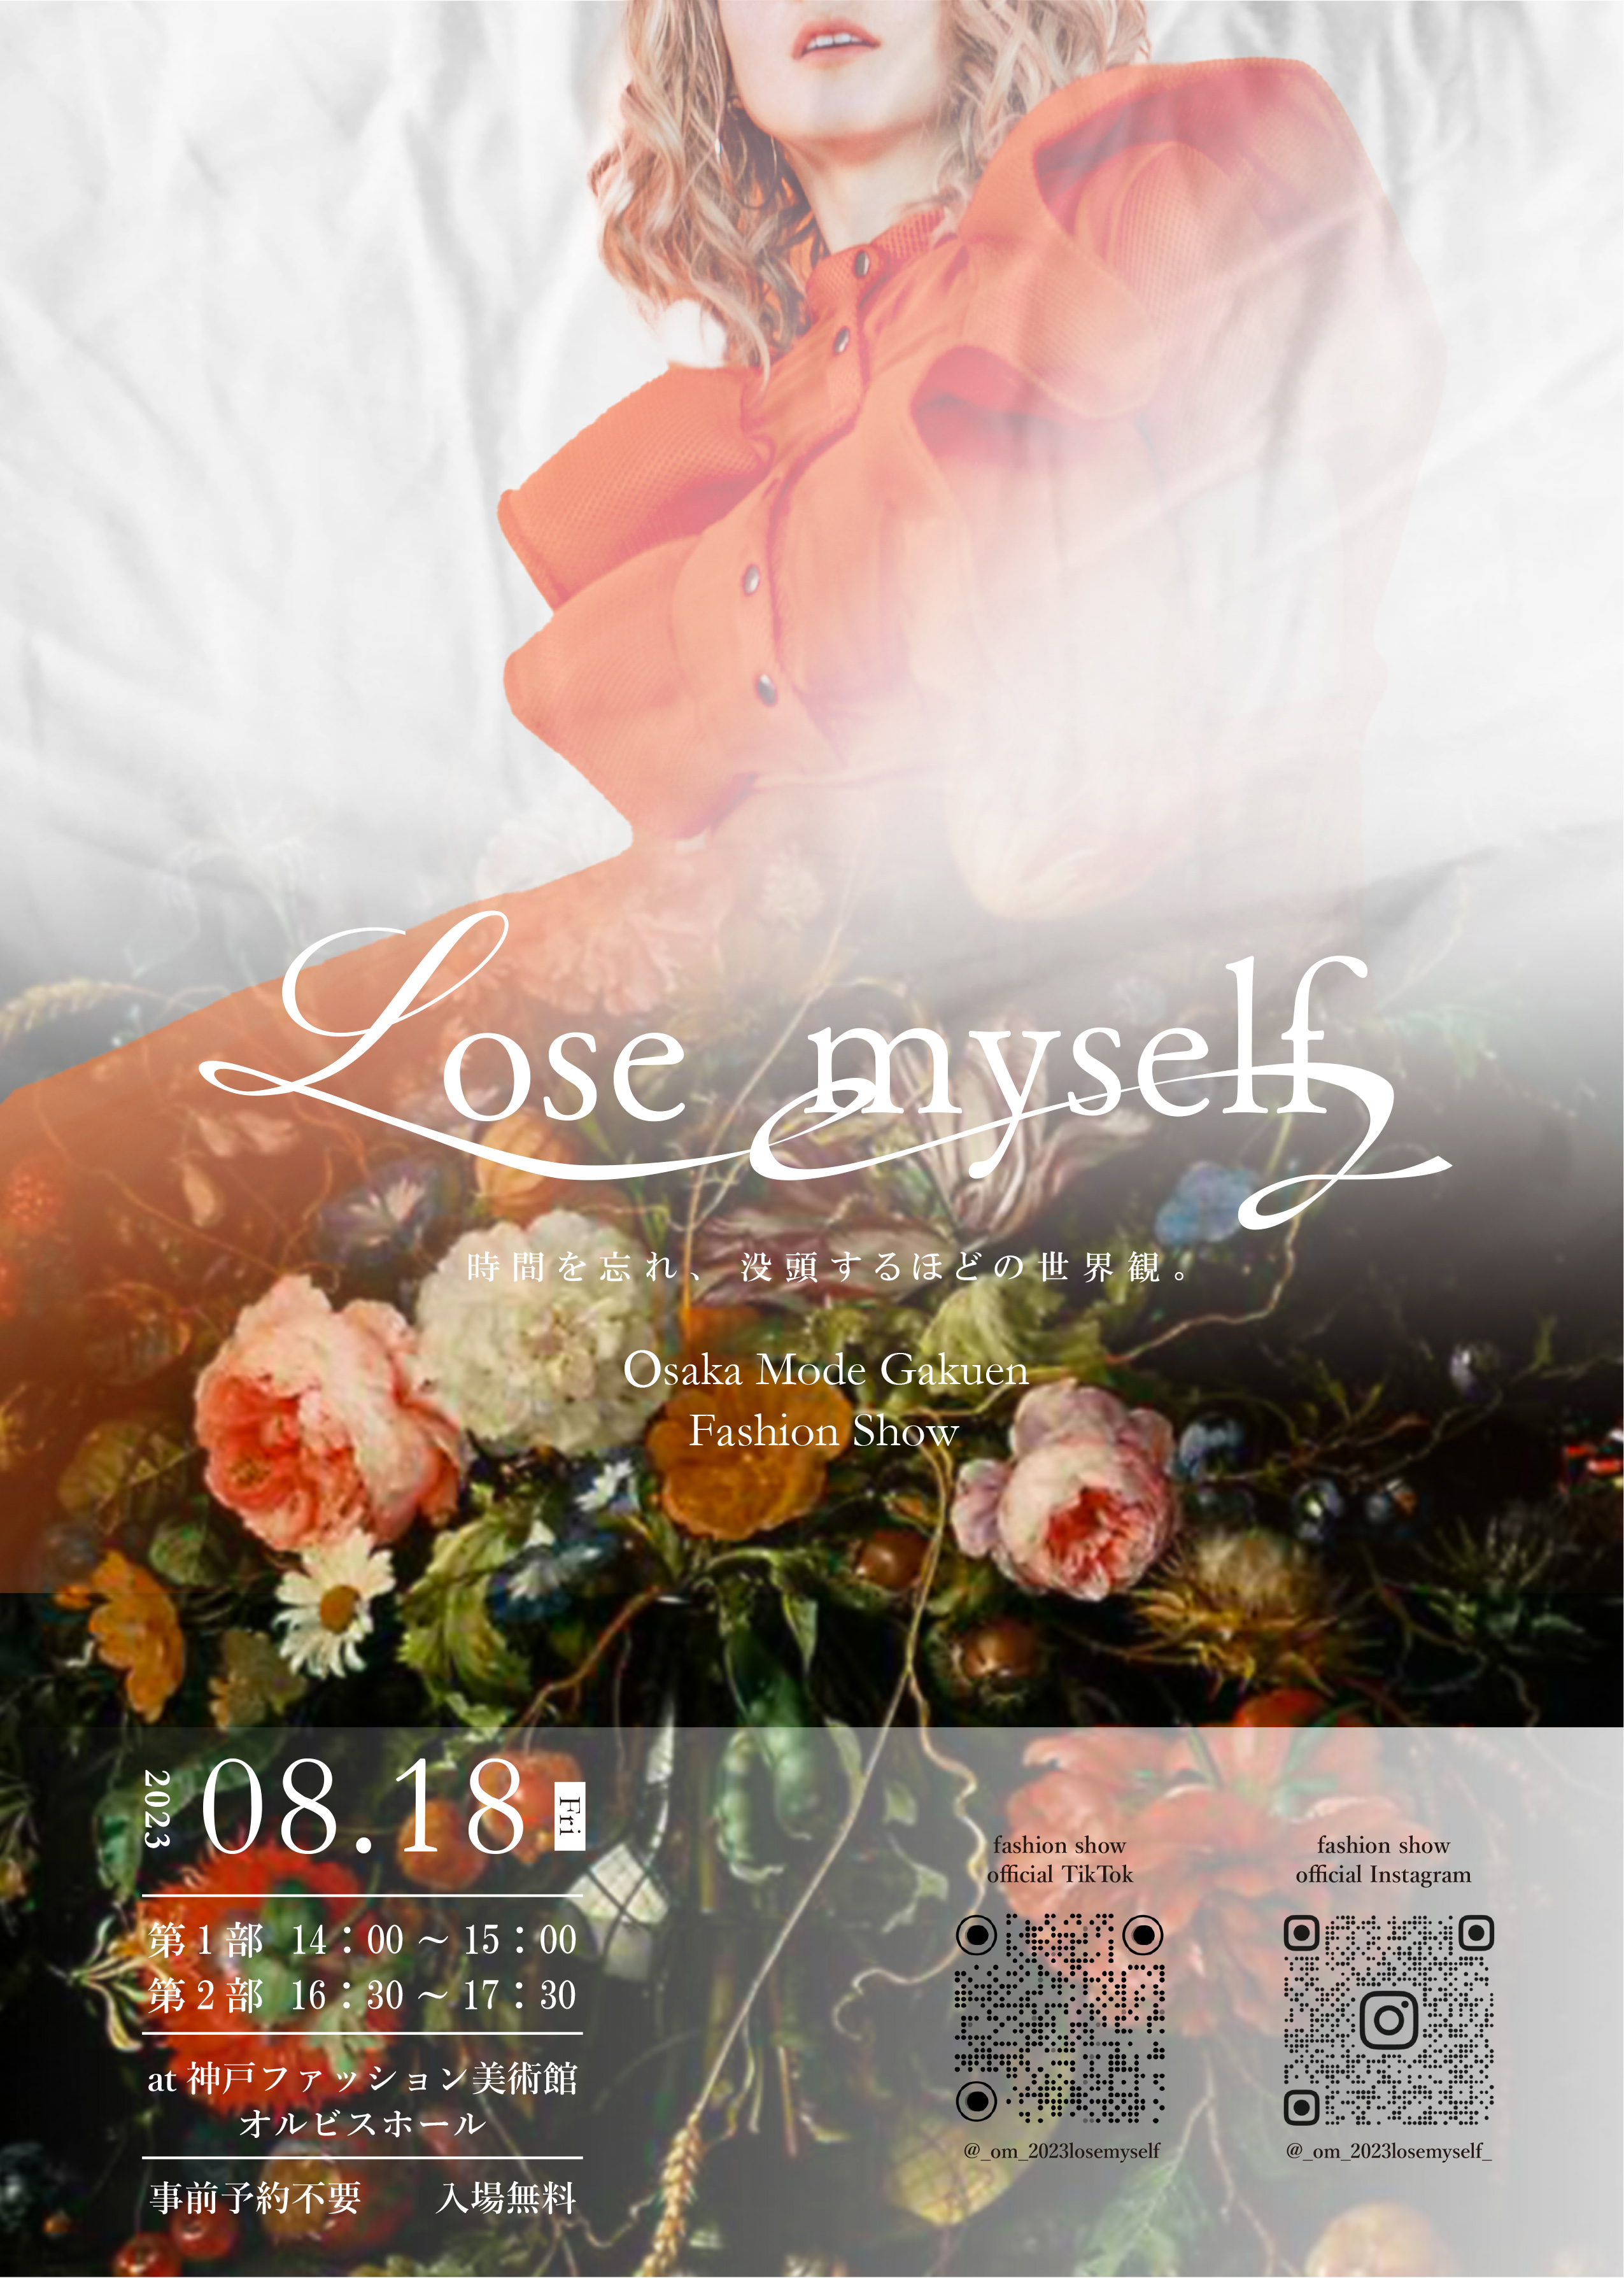 【オルビスホール情報】大阪モード学園 ファッションショー「Lose myself」開催！